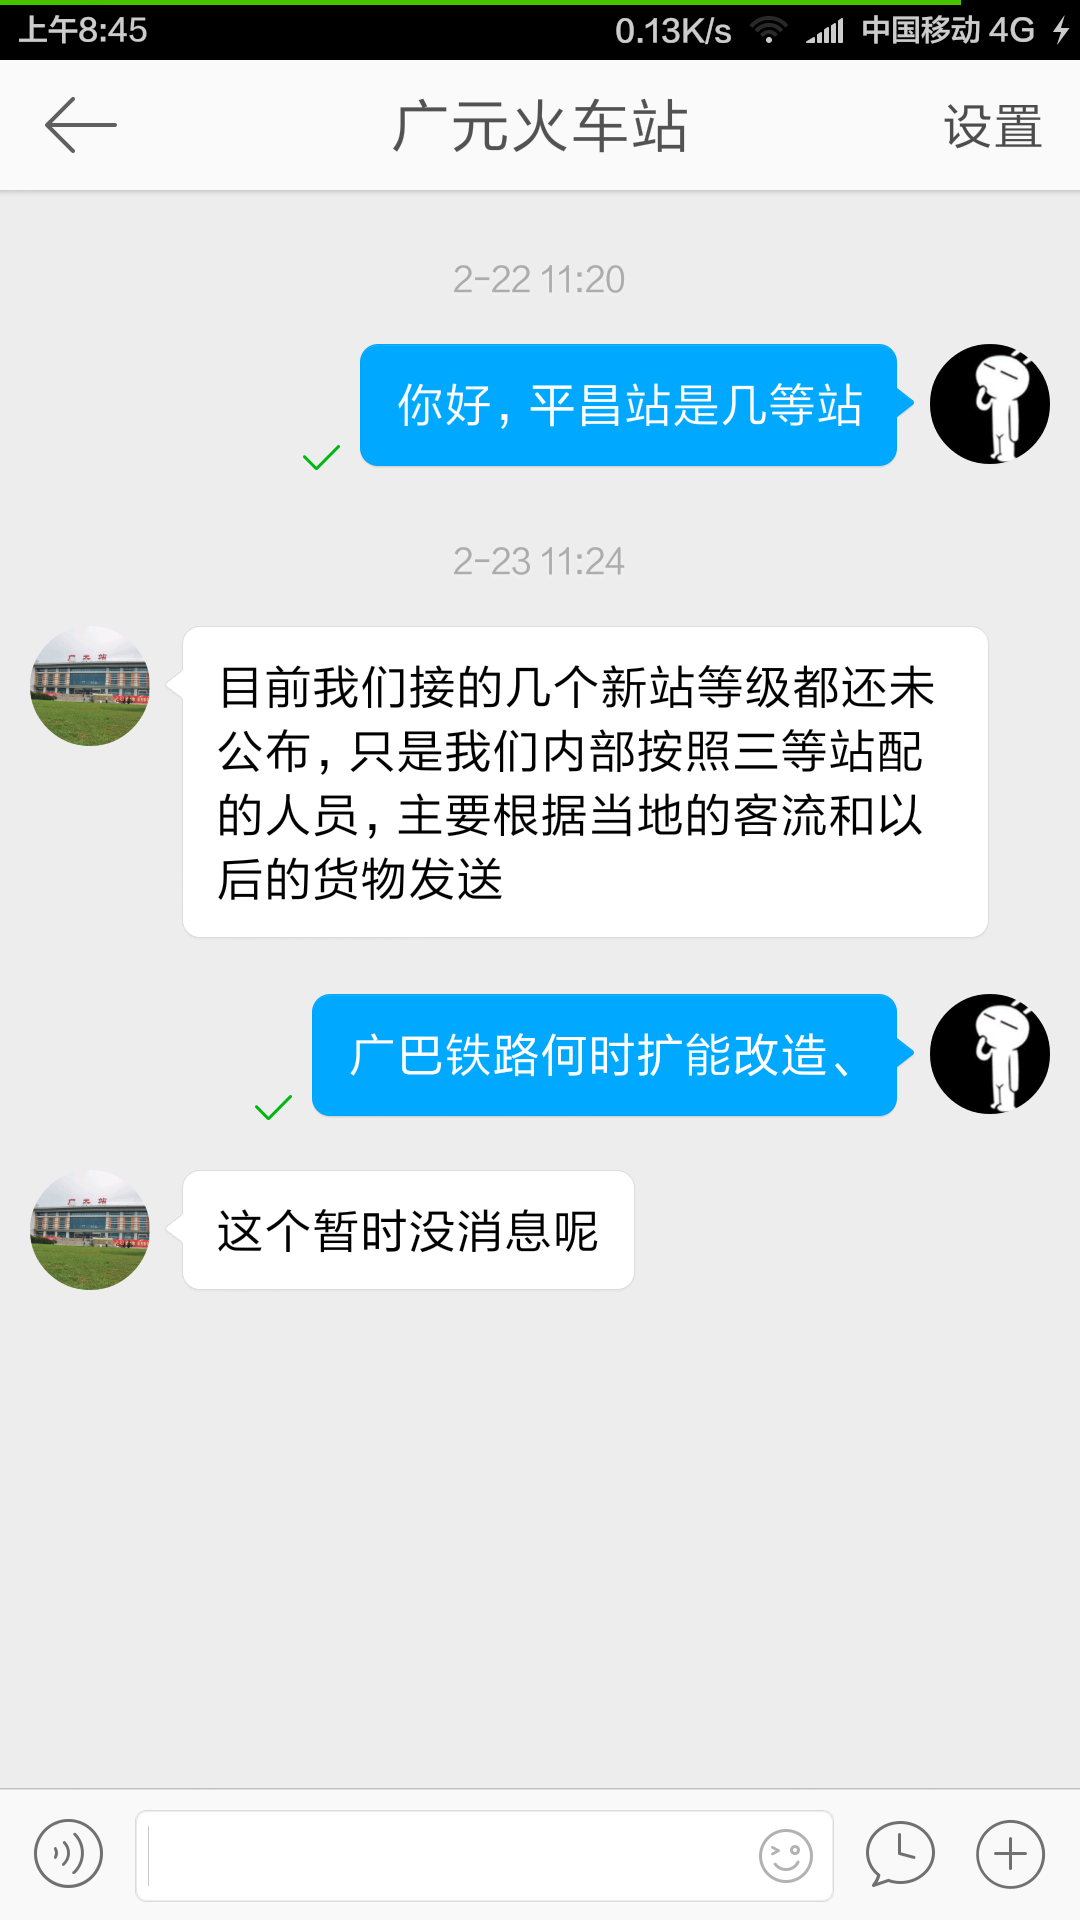 Screenshot_2016-02-25-08-45-59_com.sina.weibo.png